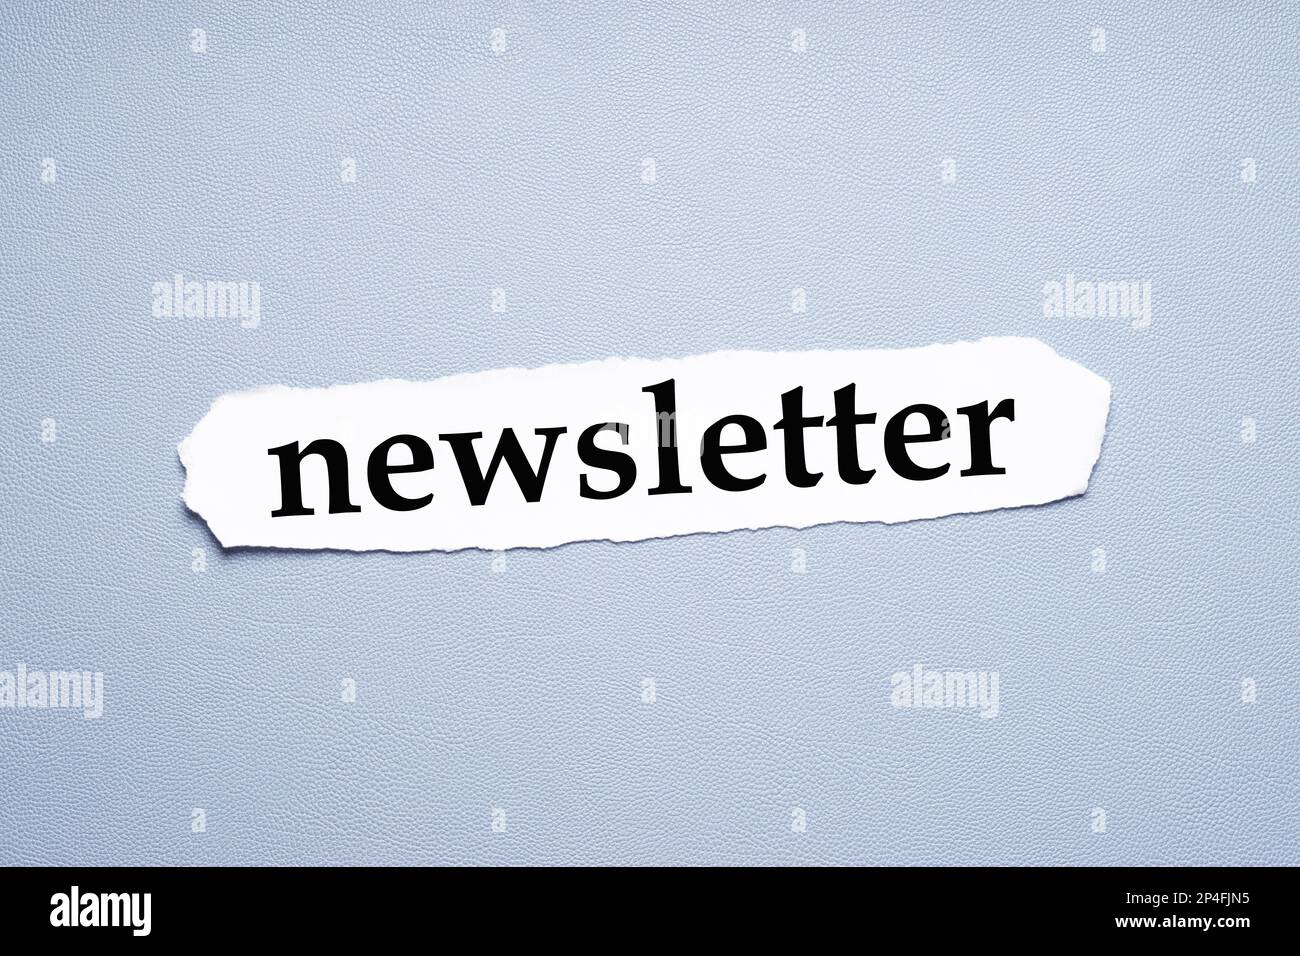 newsletter in Kleinbuchstaben, gedruckt auf zerrissenem Papier Stockfoto